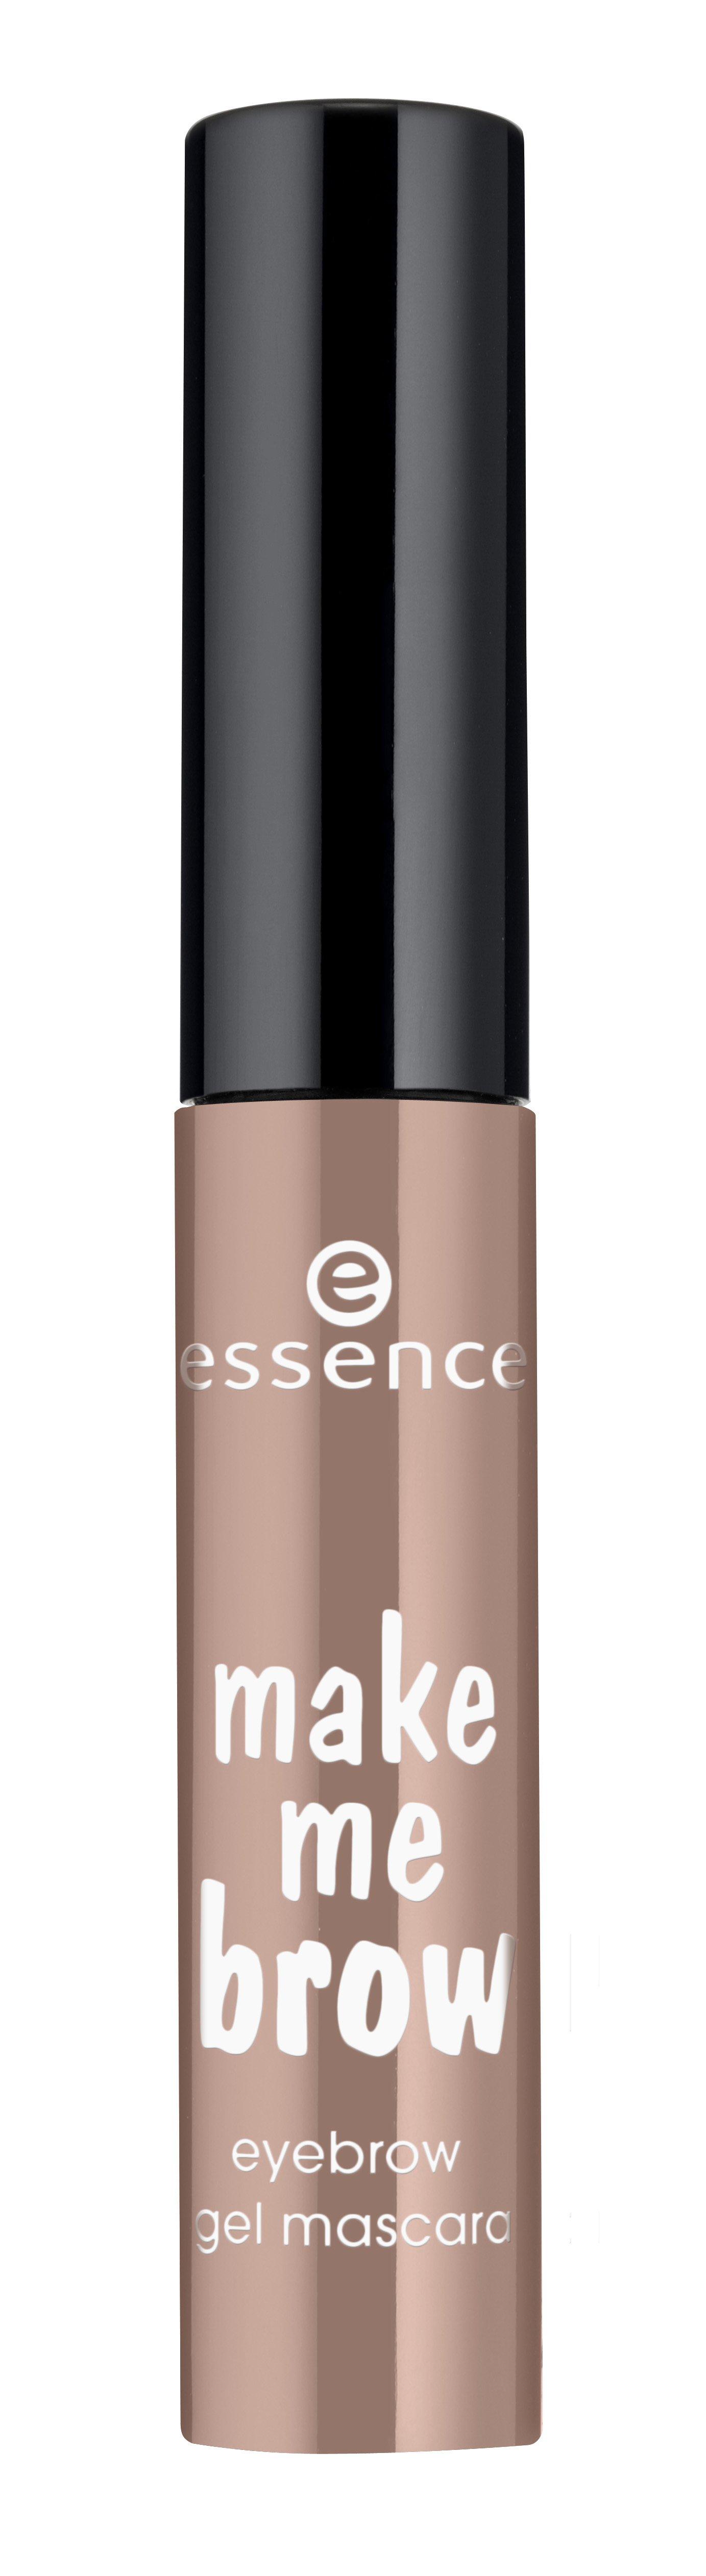 Image of essence Make Me Brow Eyebrow Mascara - 3.6ML